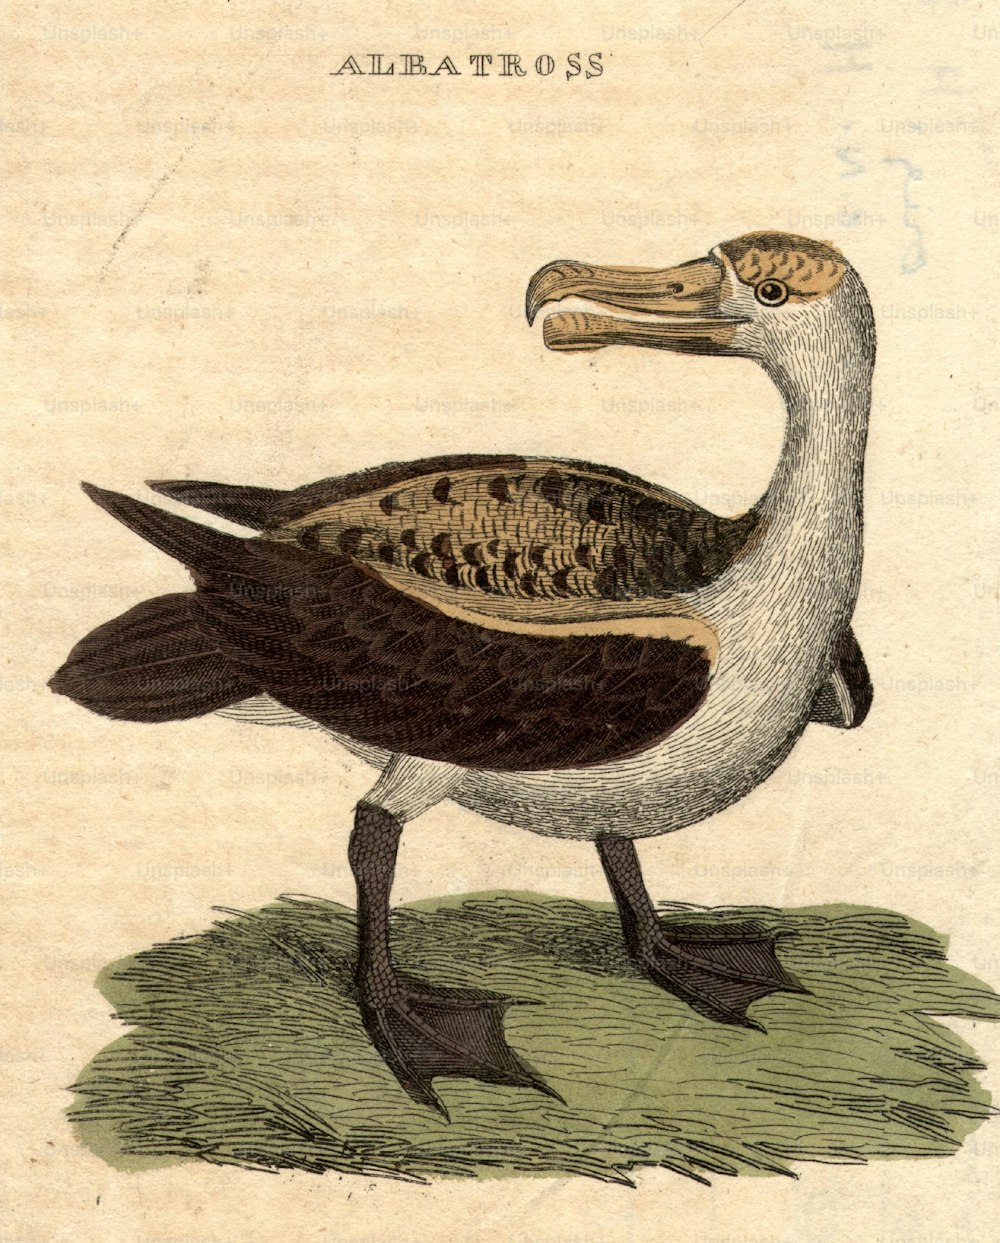 por volta de 1800: Um albatroz, uma ave marinha de asas grandes capaz de voos longos.  (Foto: Hulton Archive/Getty Images)